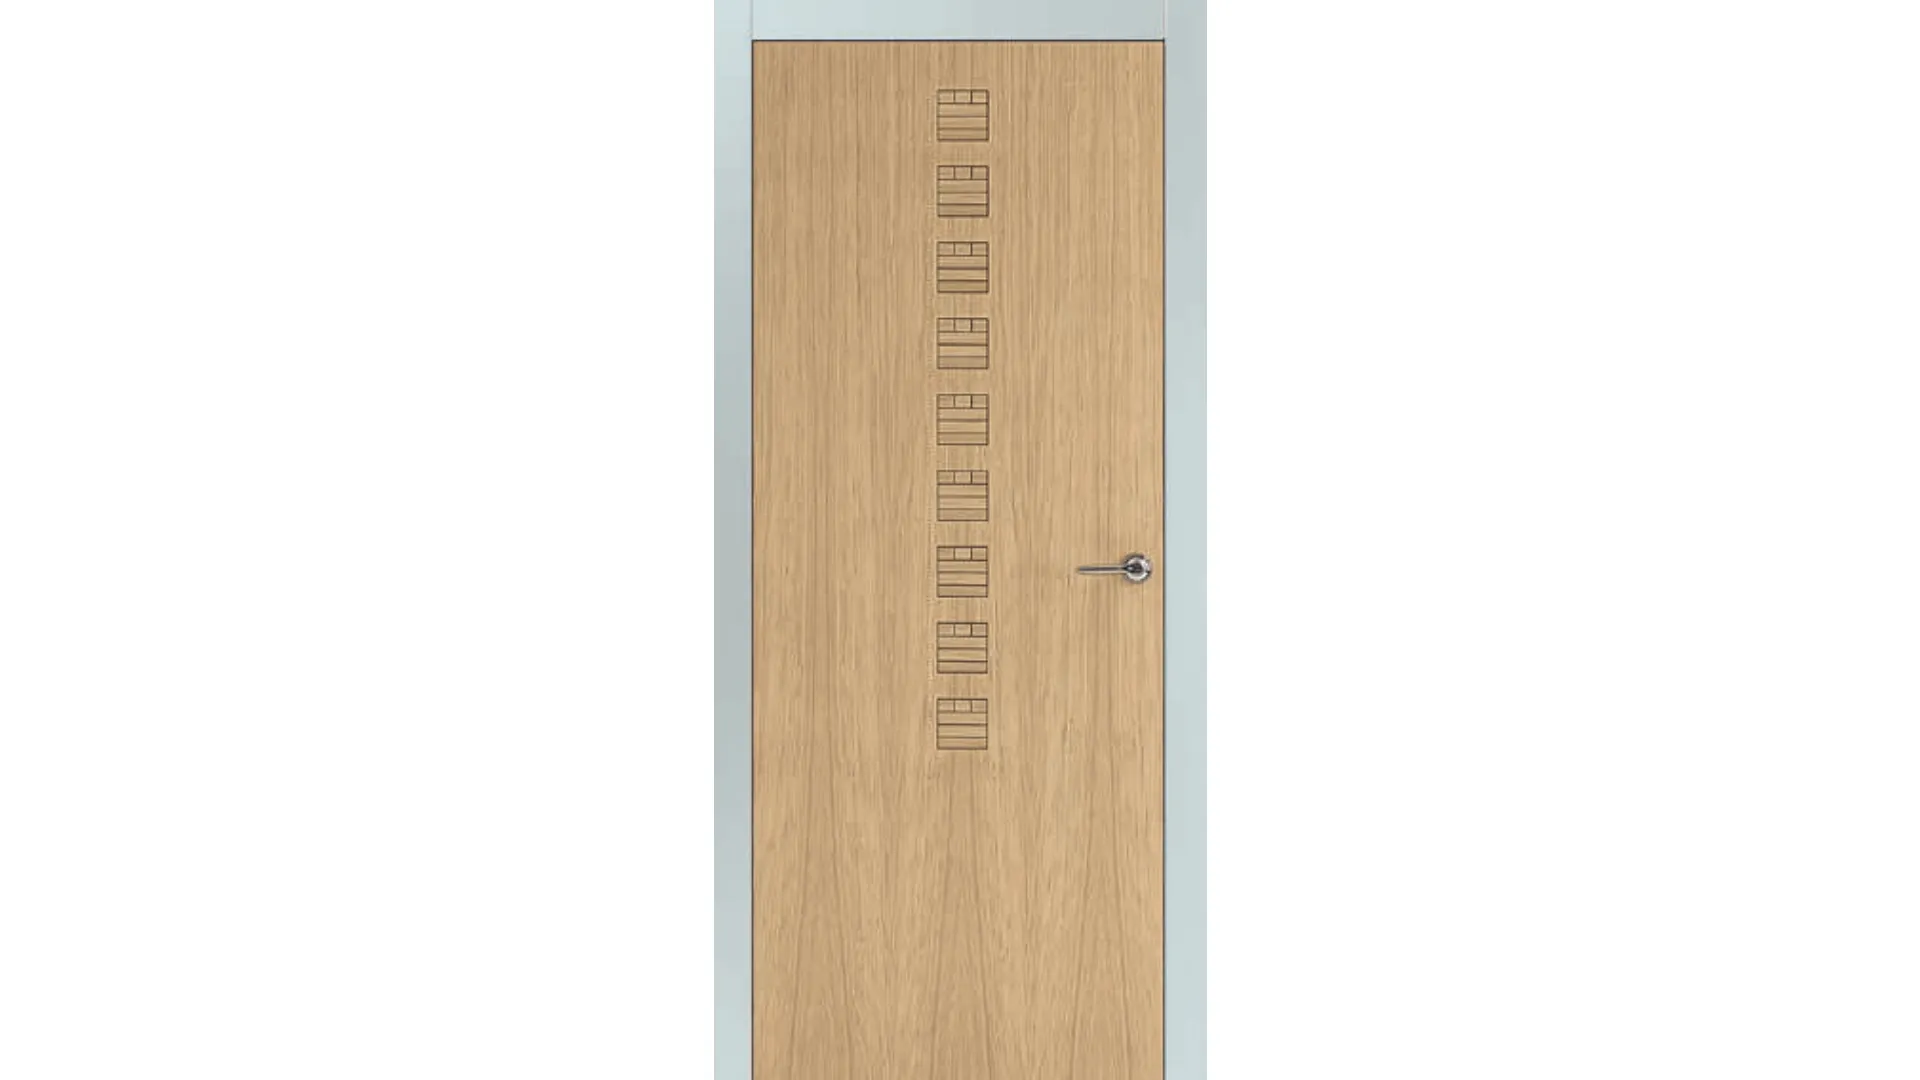 Screen printed door with dark wood carvings